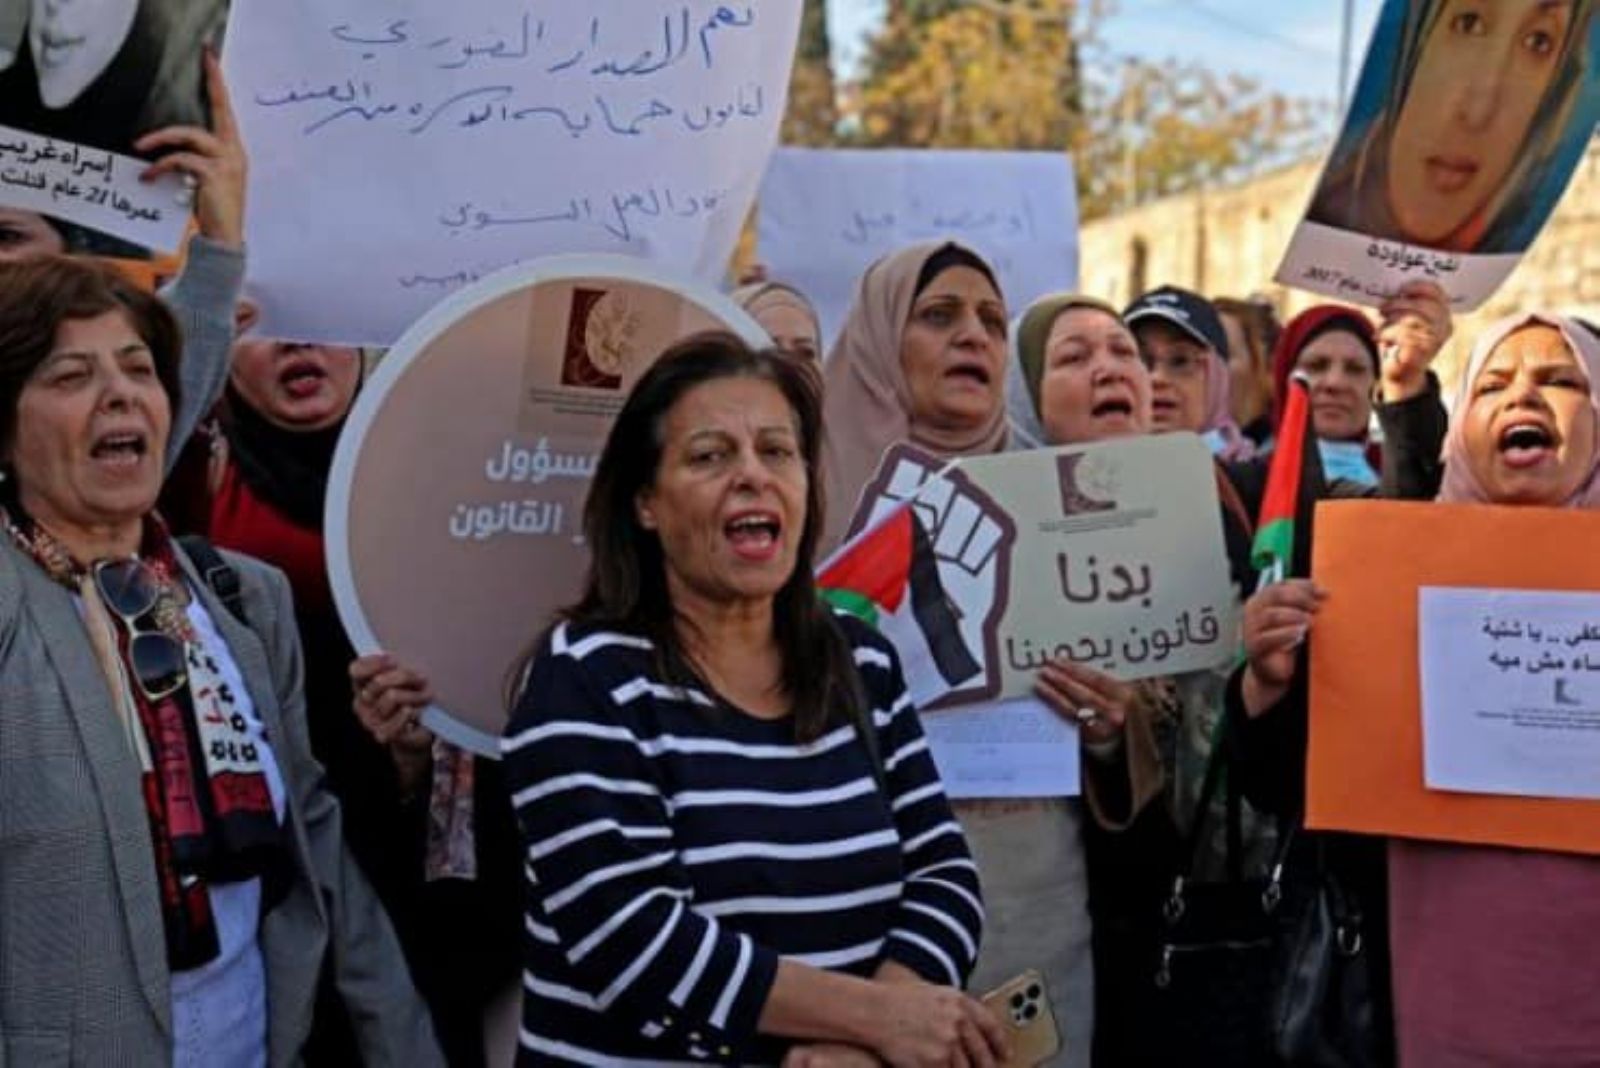 *«الديمقراطية» تدين الحملات التحريضية بحق المنظمات النسوية في غزة وتدعو لحوار هادئ في القضايا الجدلية